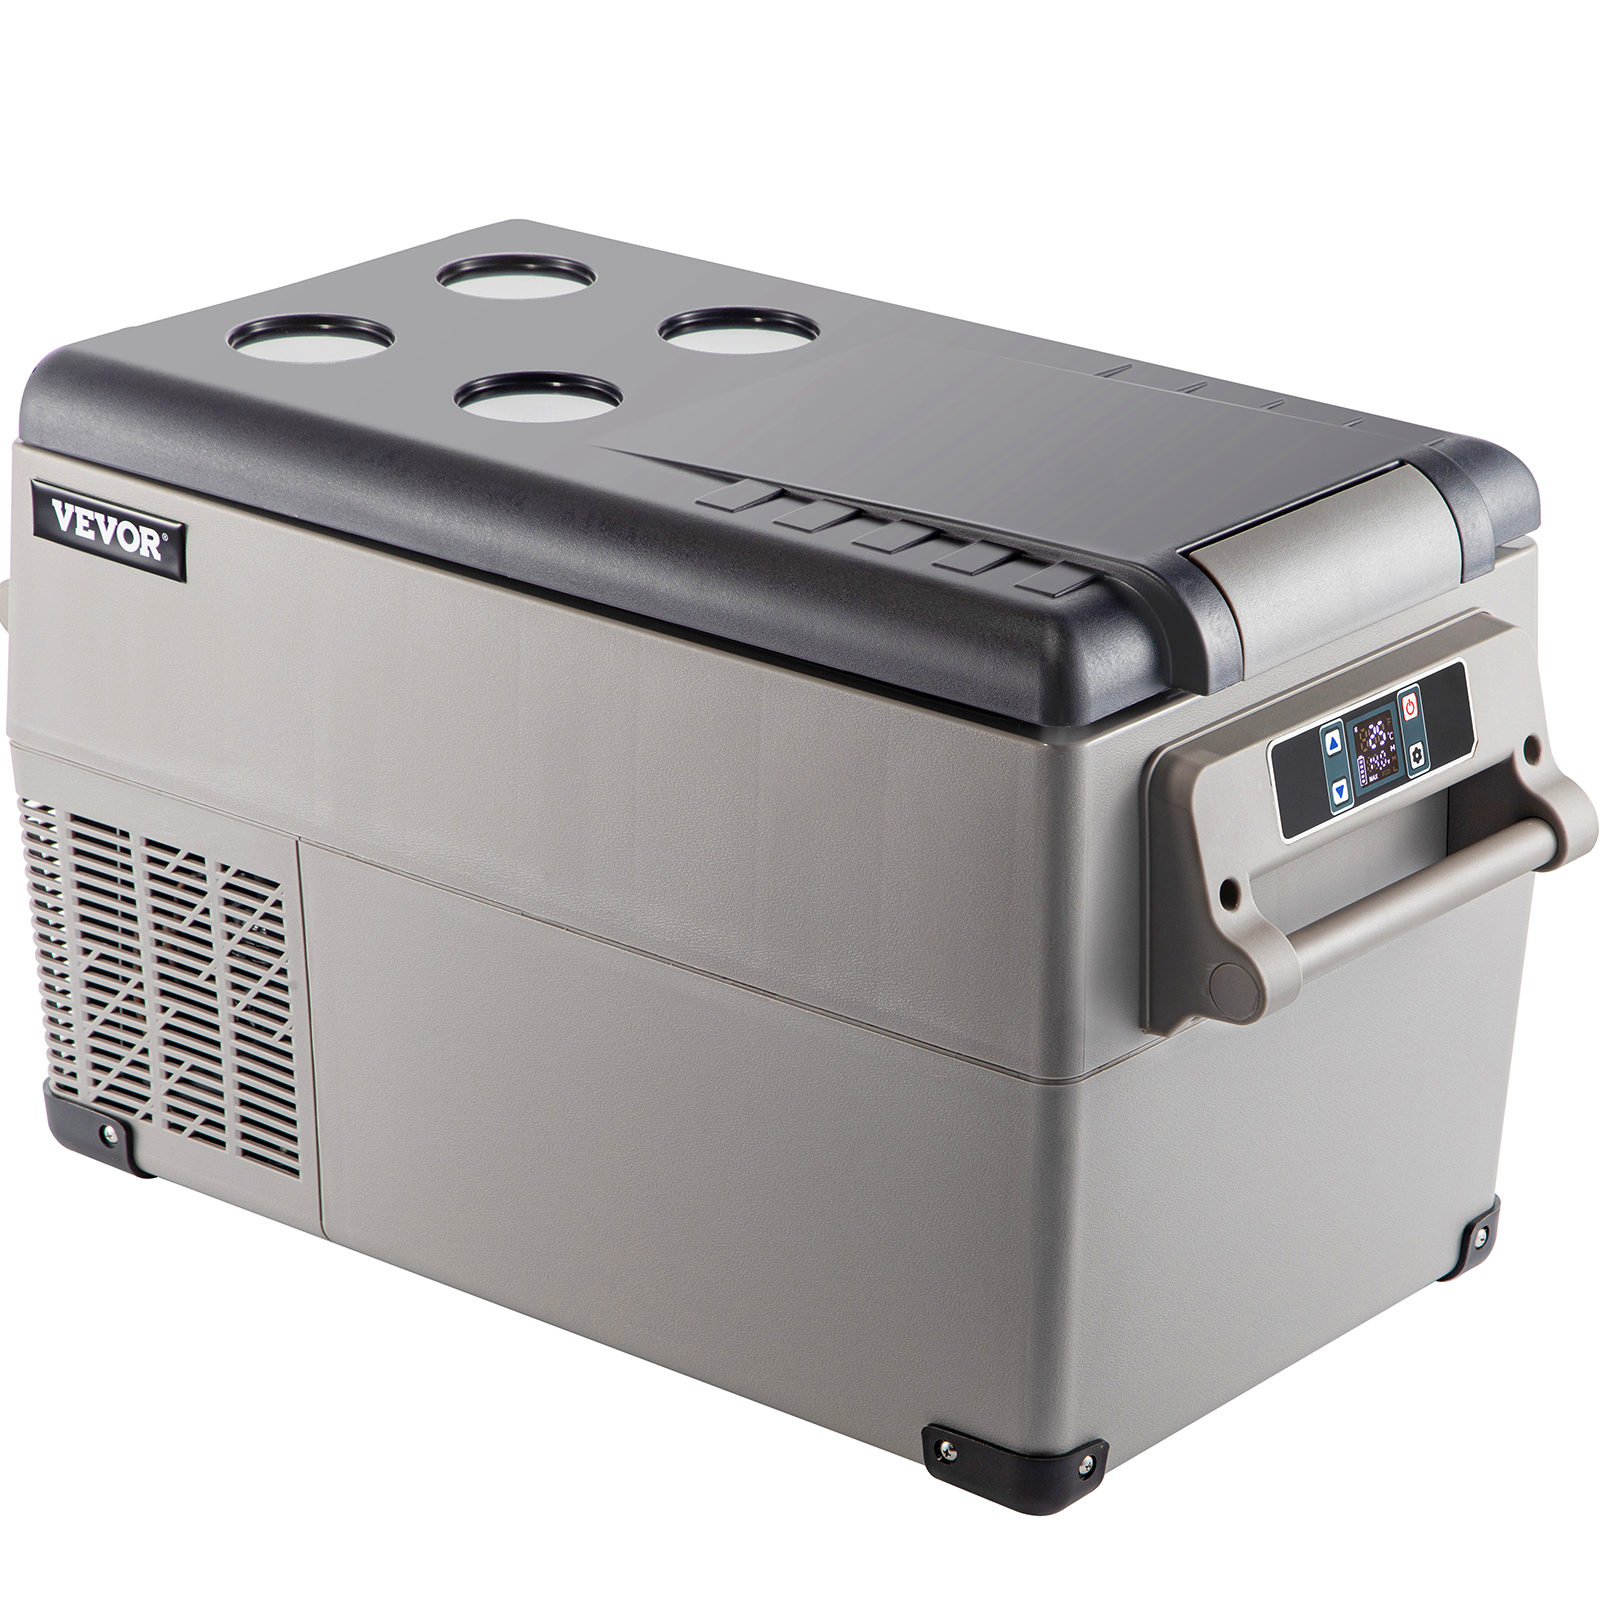 portable freezer,58 Qt,fast cooling